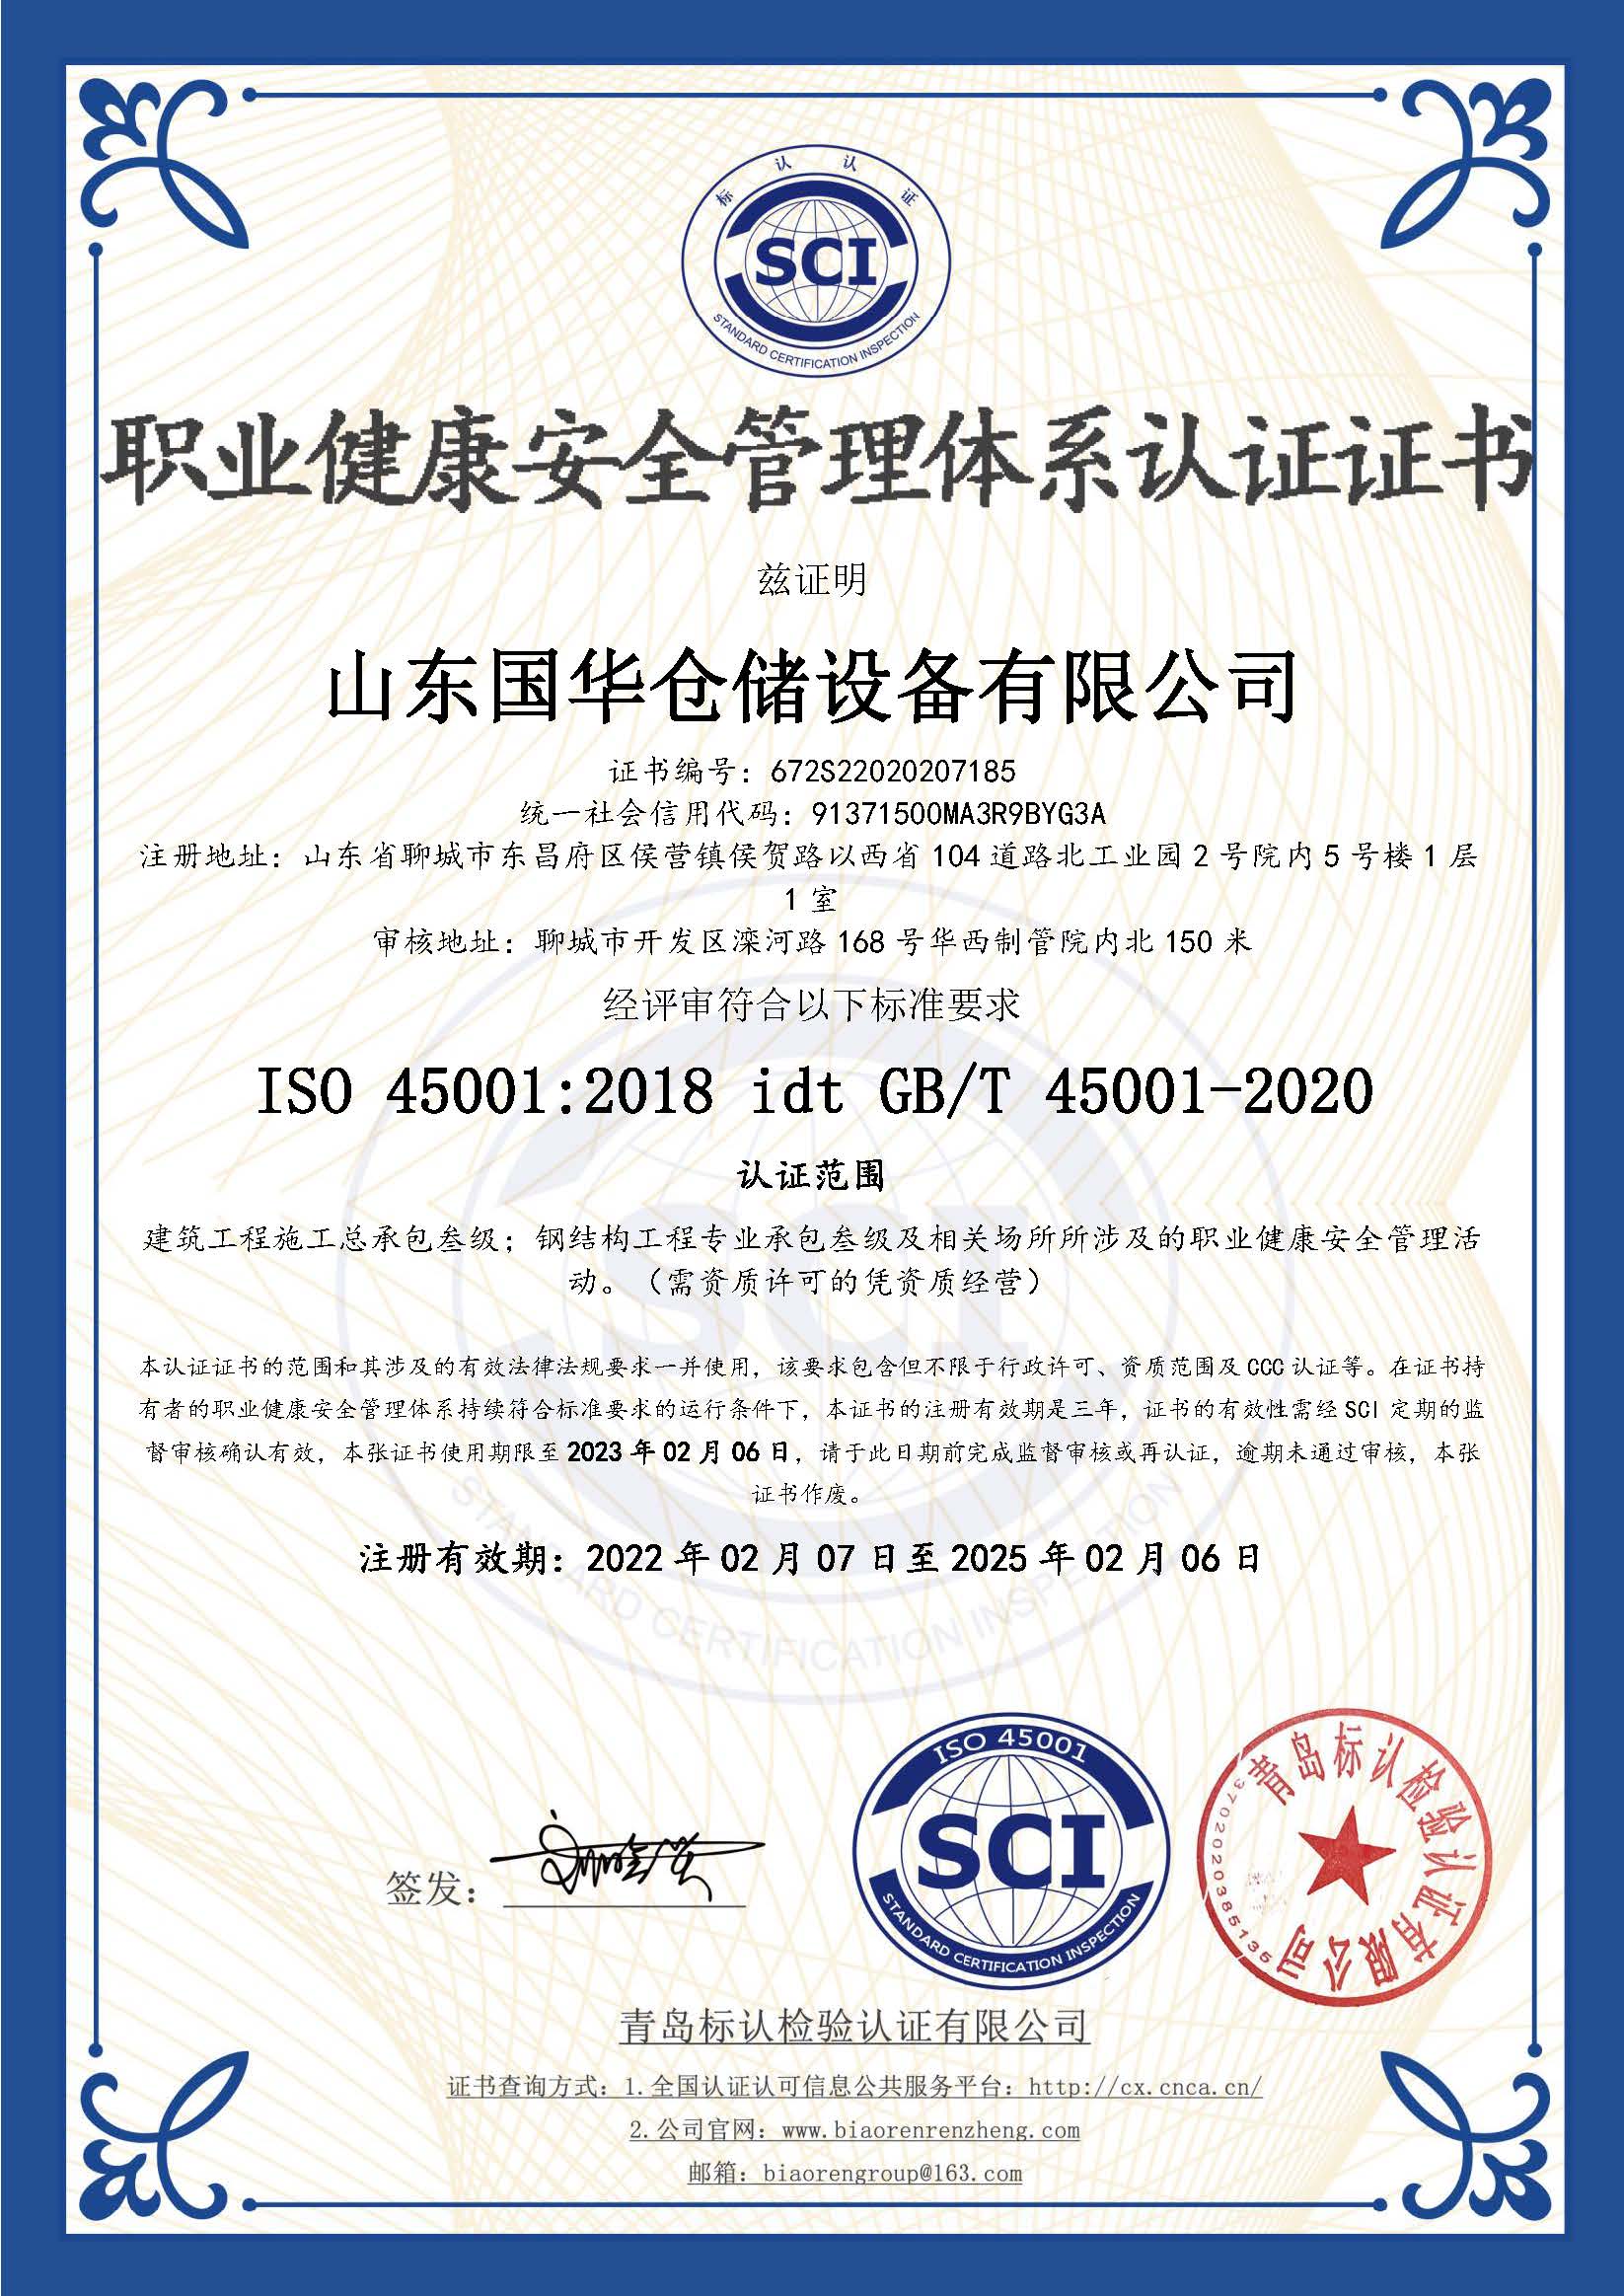 洛阳钢板仓职业健康安全管理体系认证证书